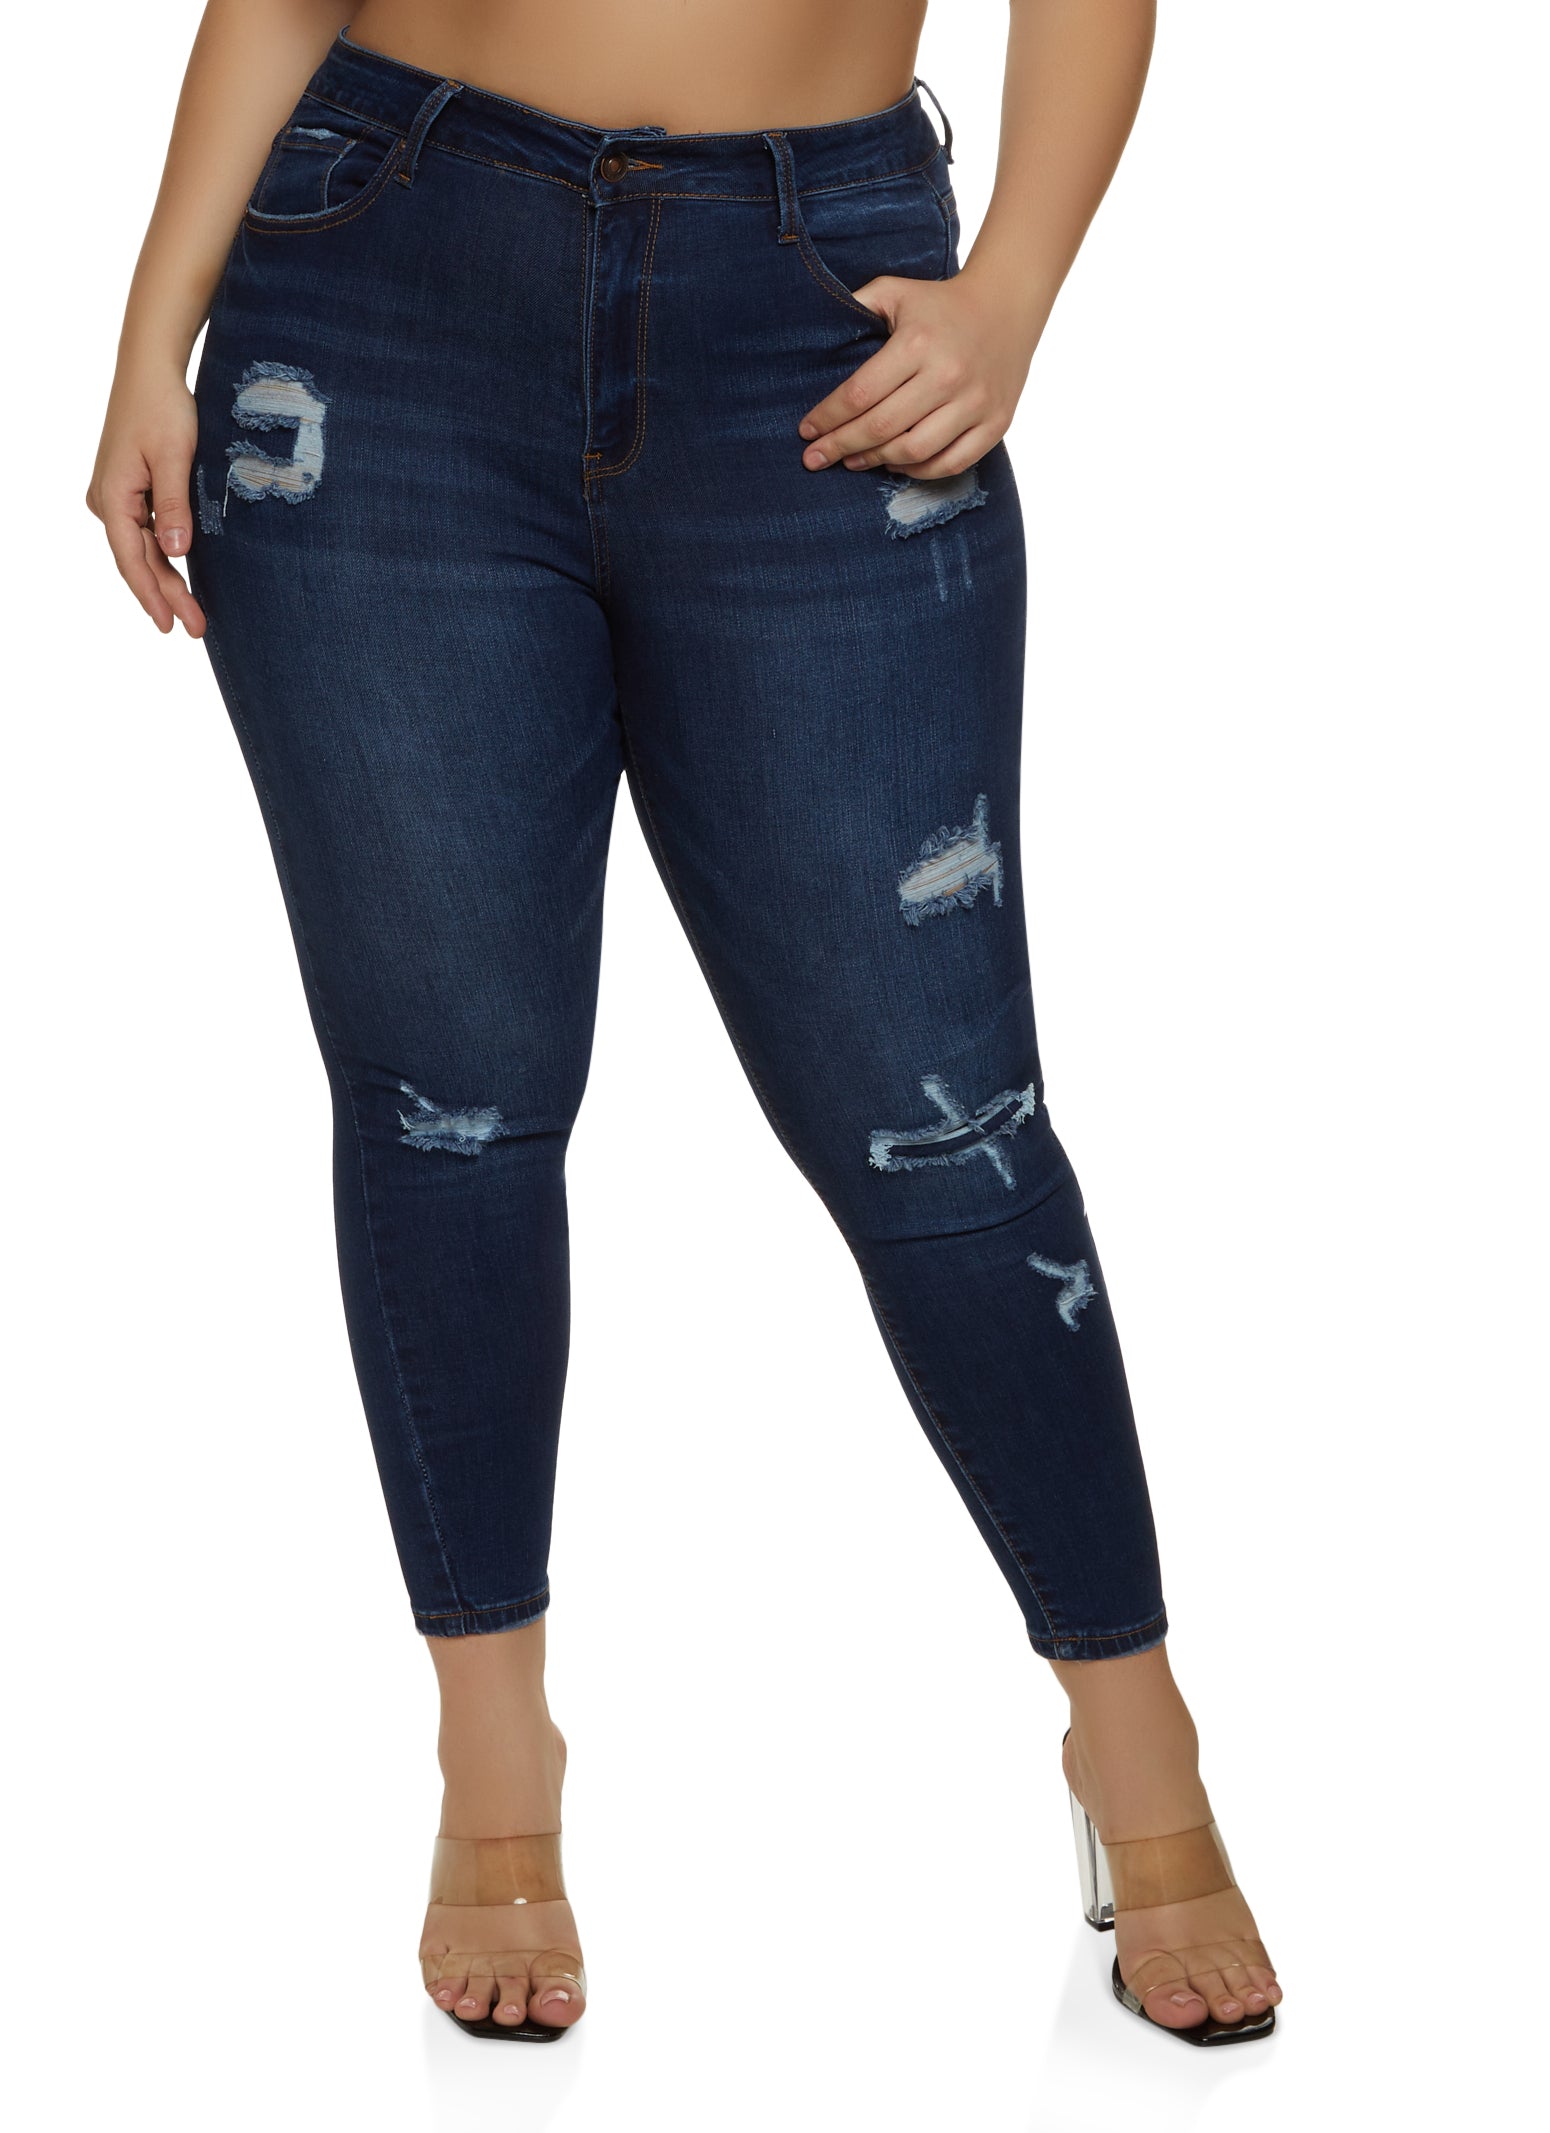 Waxed slim crop jeans - Women